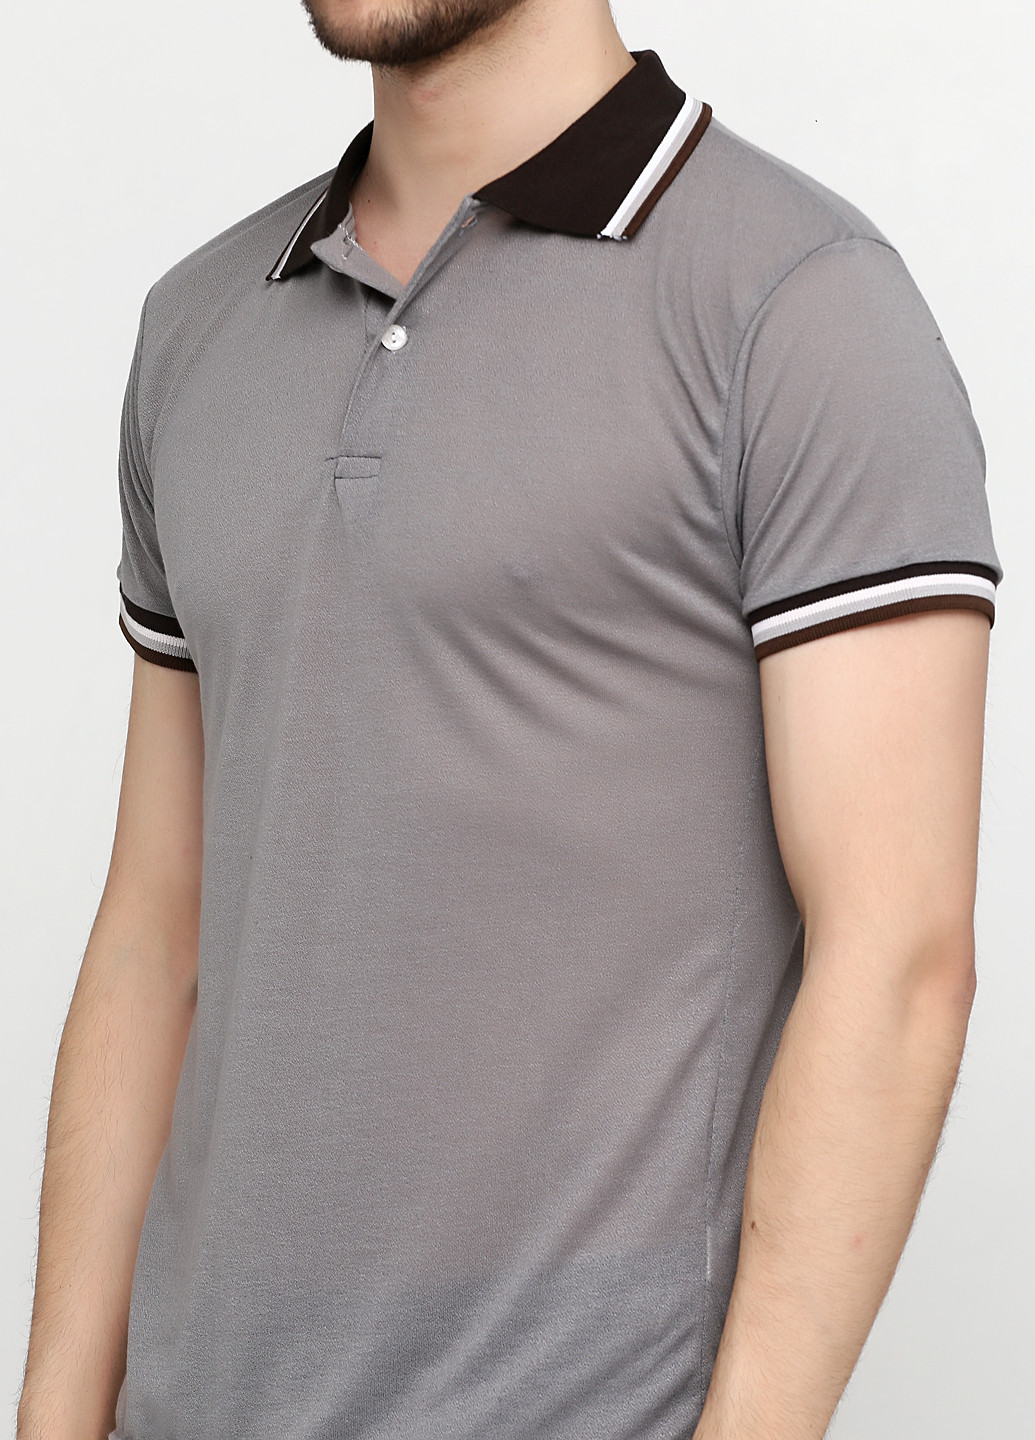 Серебристая футболка-поло для мужчин Chiarotex однотонная